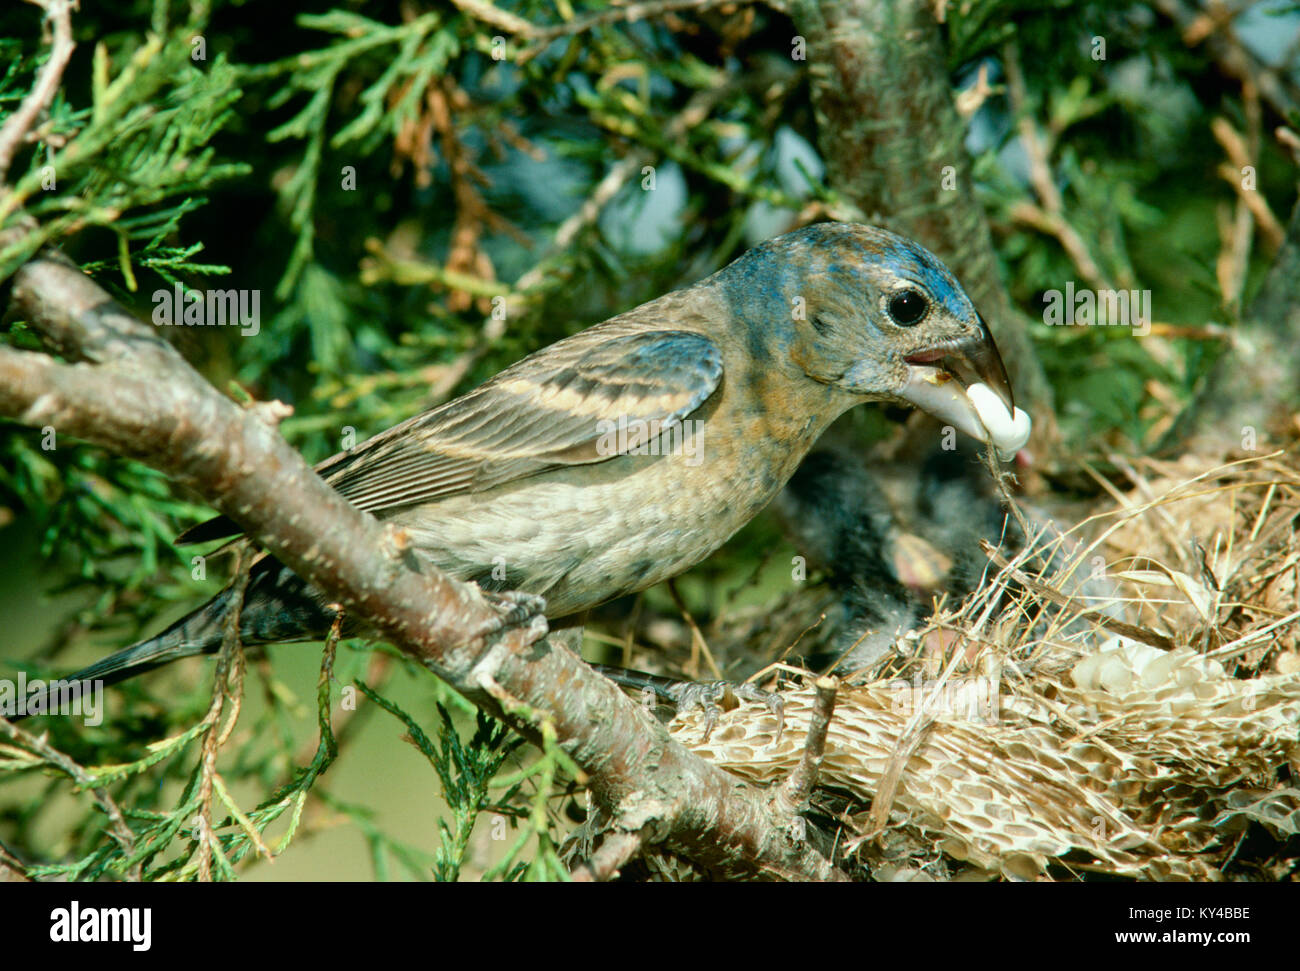 Weibliche Blue Grosbeak Mutter, Passerina caerulea, fäkale sac von nestlingen in ungewöhnlichen Nest - Stroh- und Schlangenleder in immergrünen Baum. Stockfoto